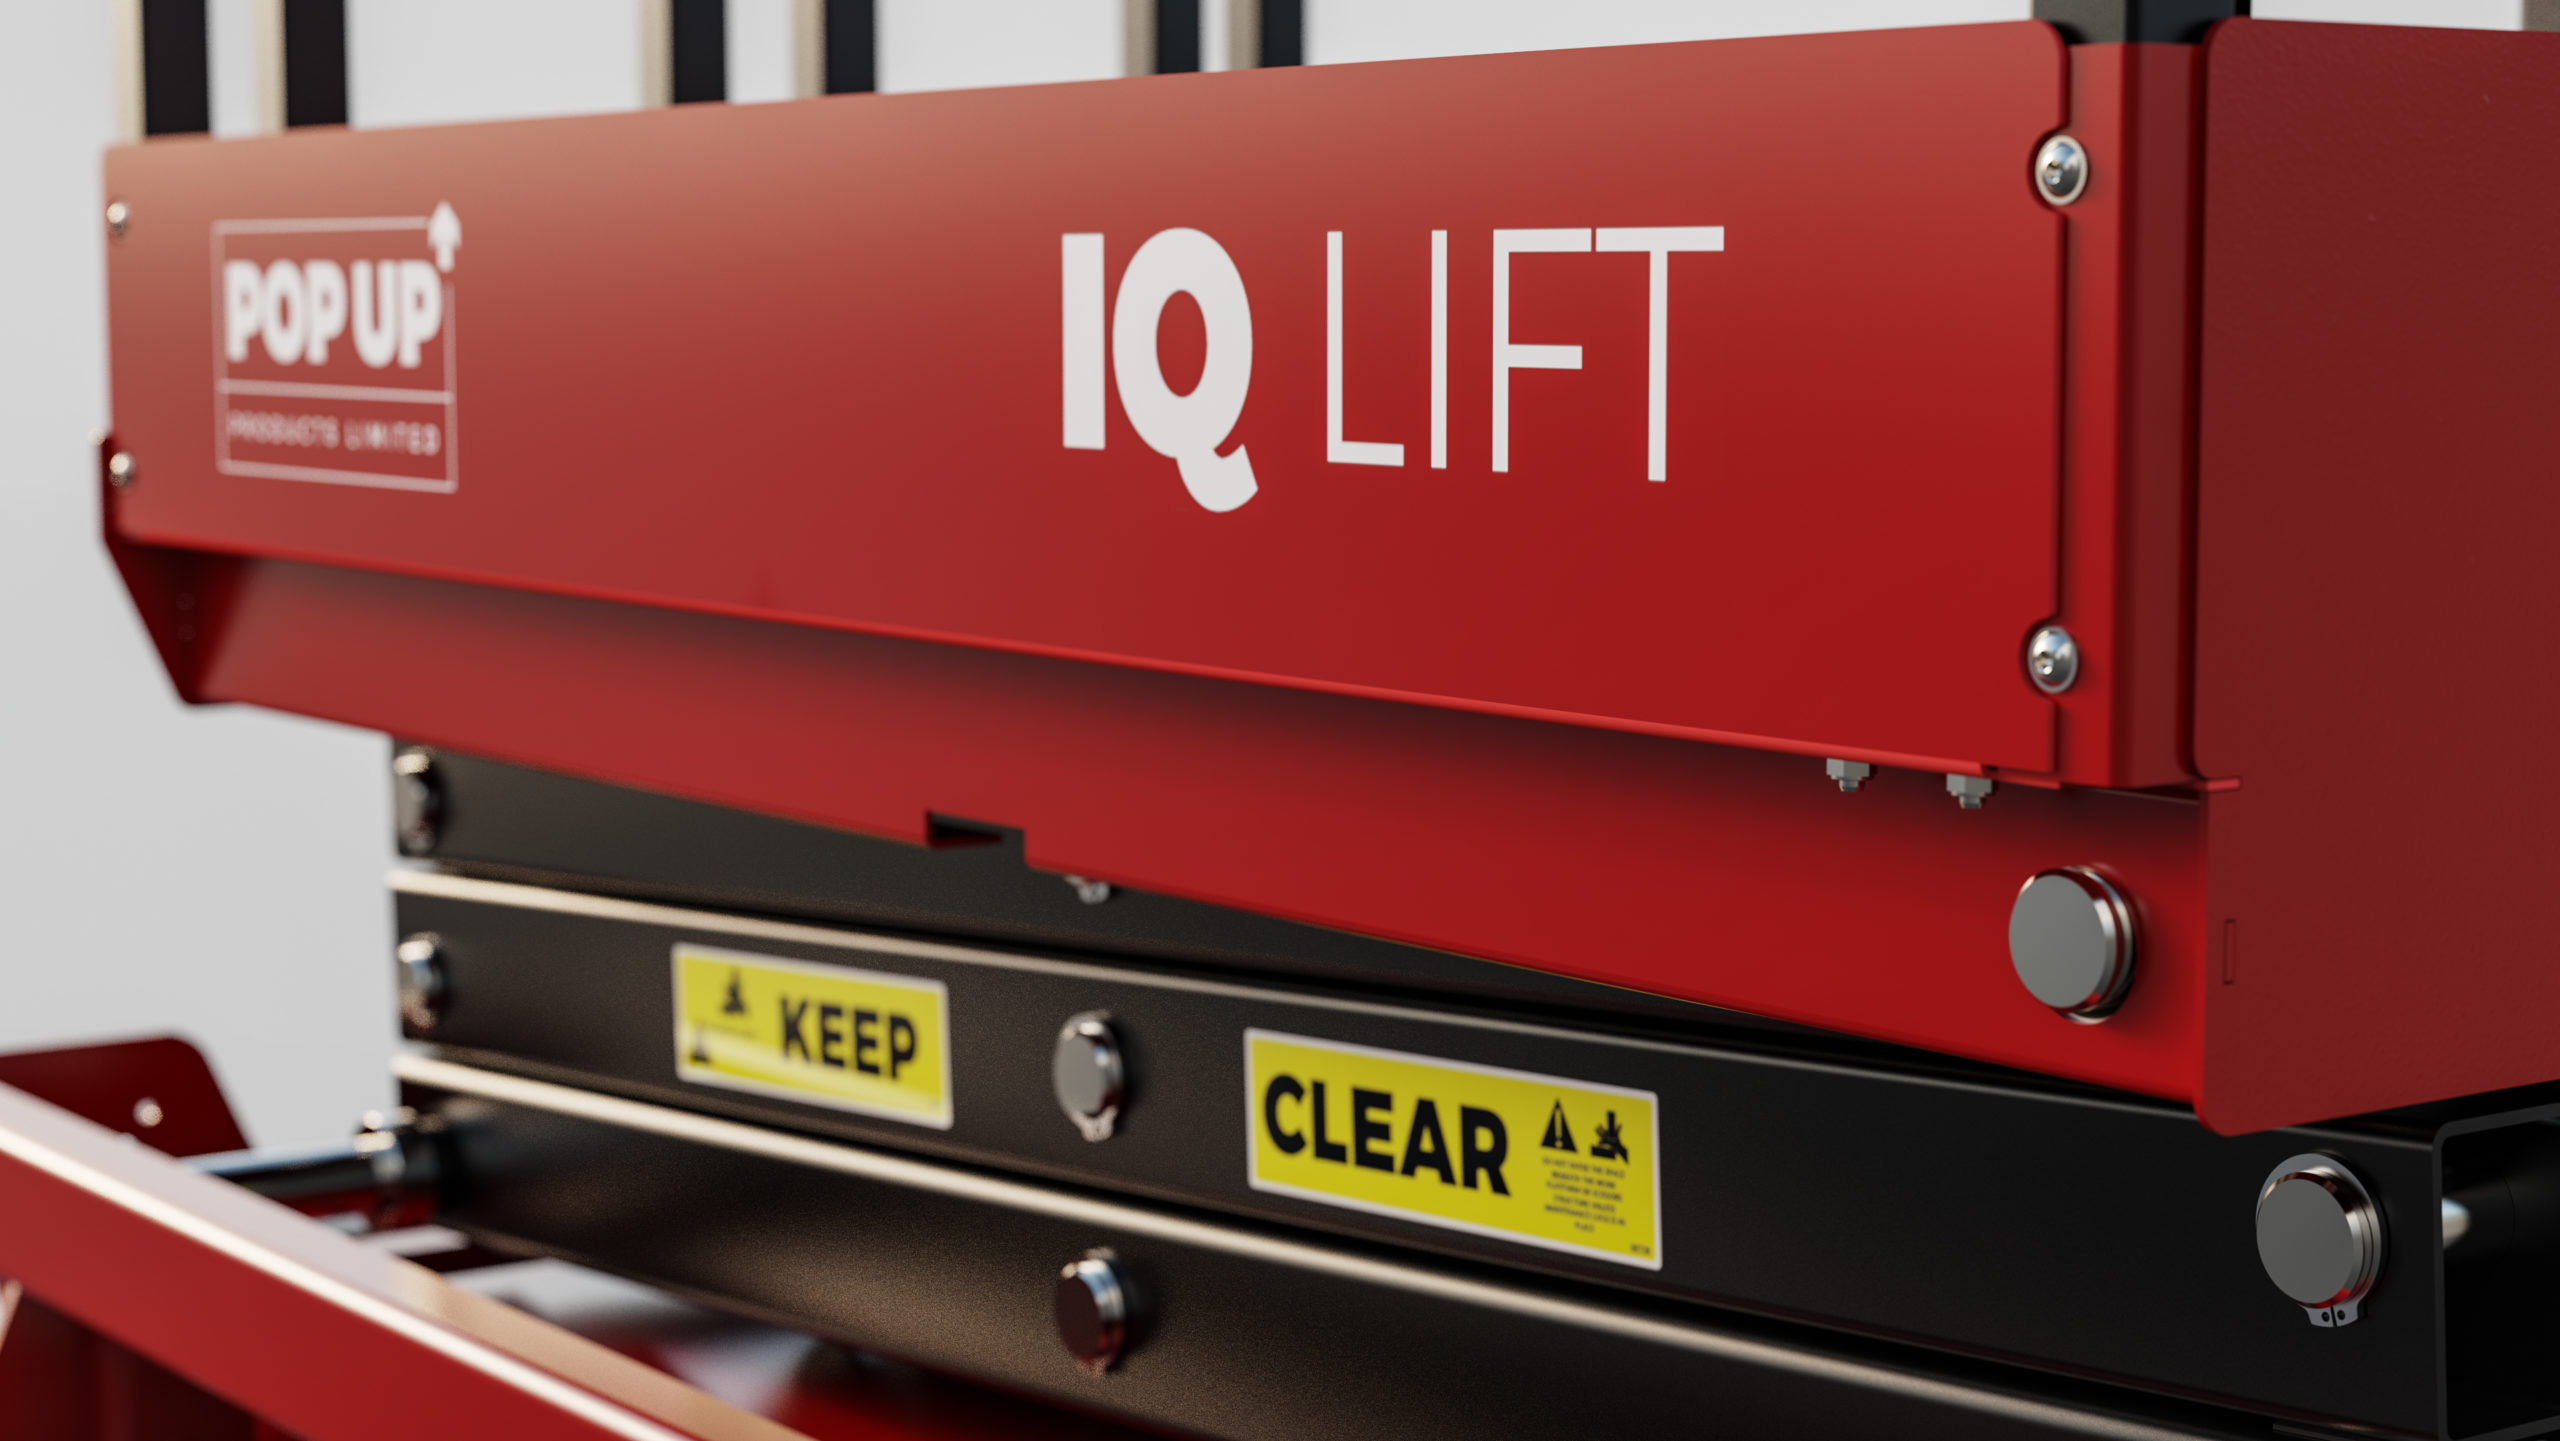 Pro Iq Lift 4 5m Low Level Access Machine